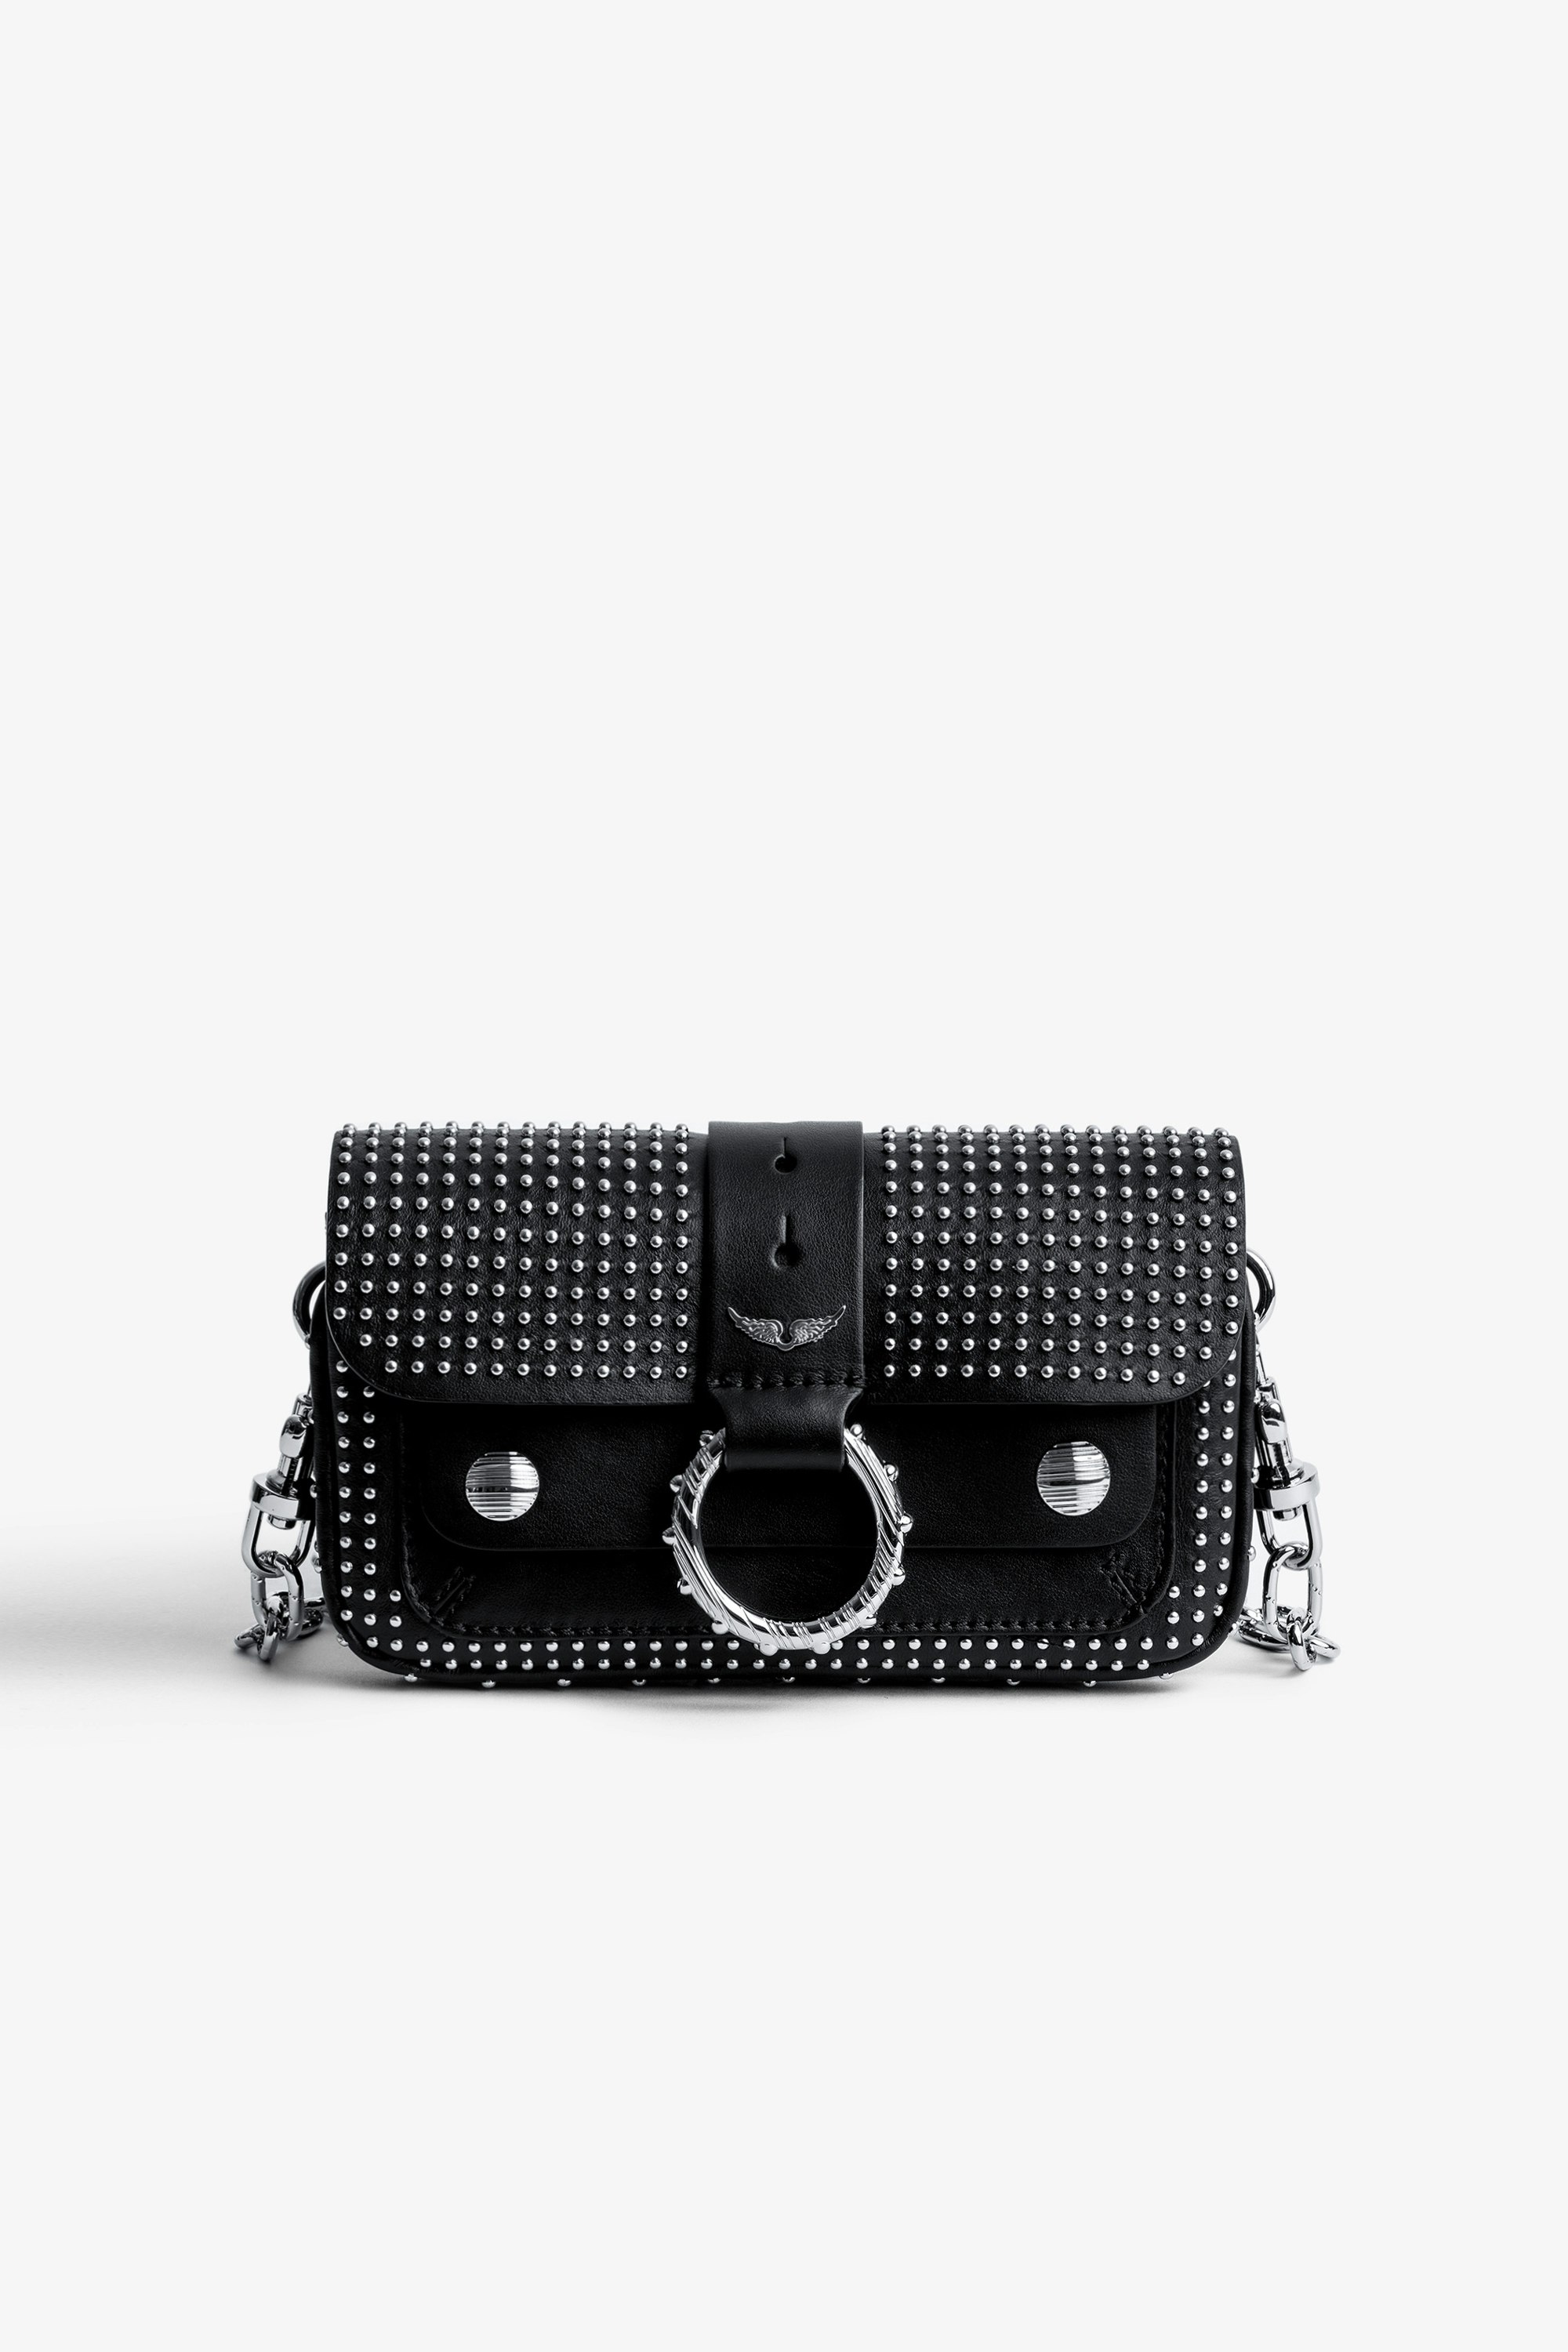 Tasche Kate Wallet Kleine Damentasche aus schwarzem Leder mit Klappe, Metallring und Schulterriemen